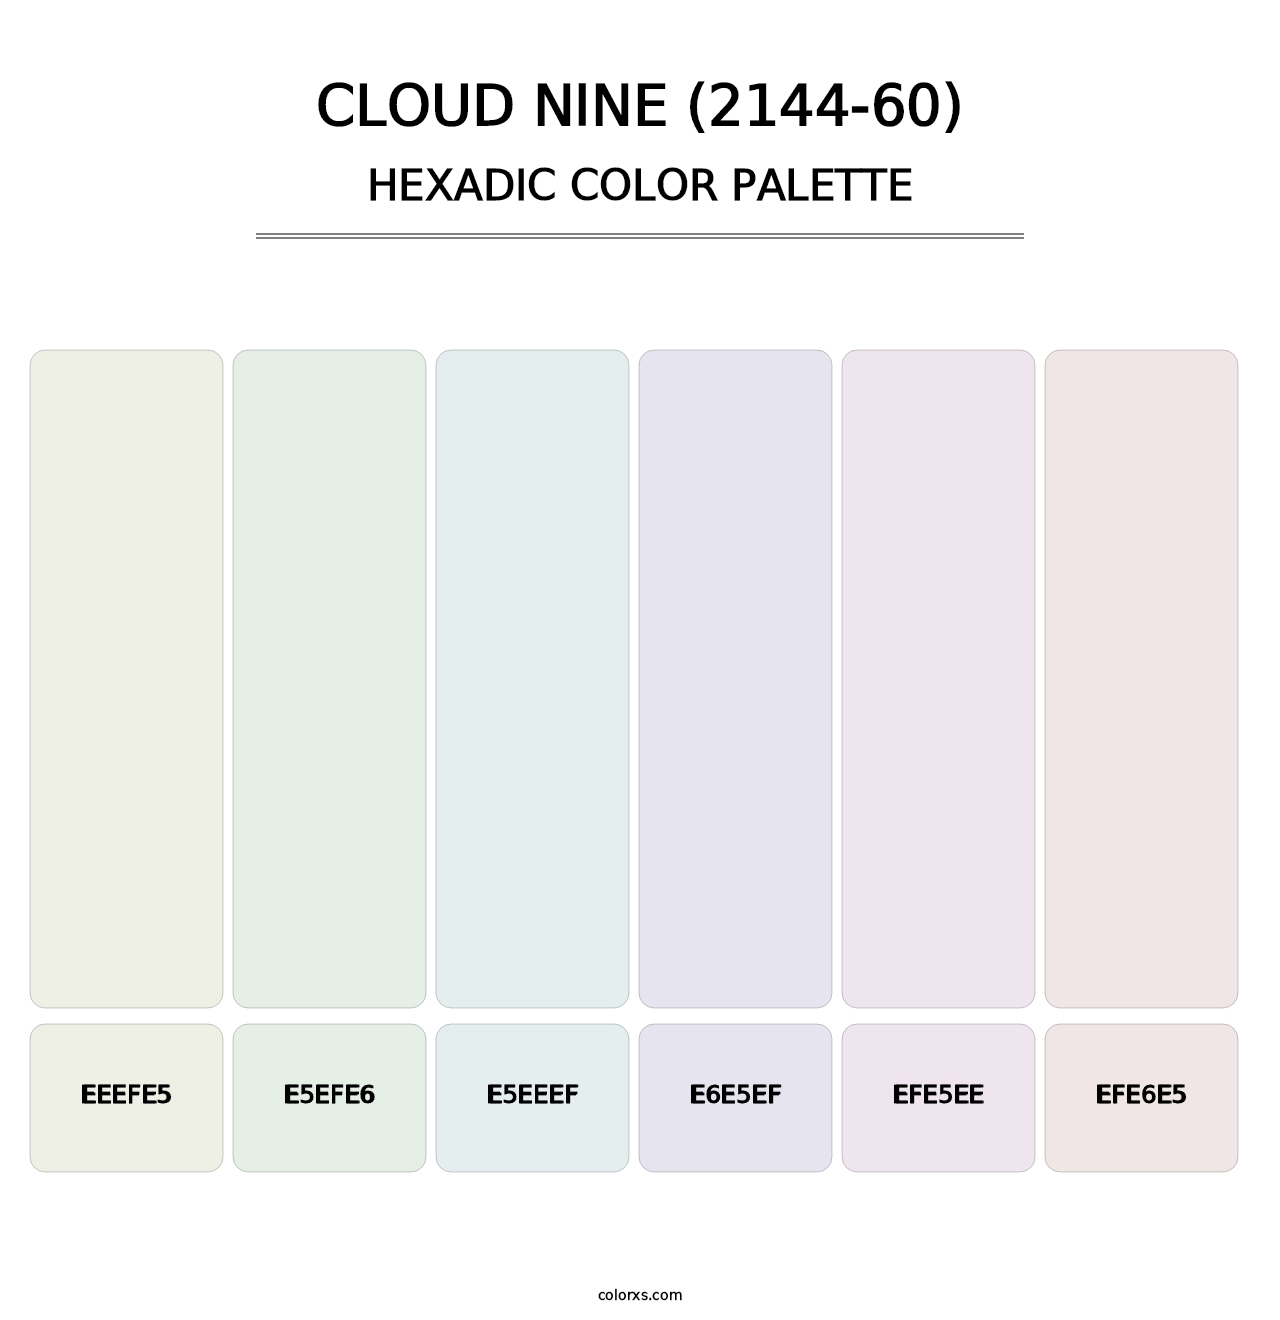 Cloud Nine (2144-60) - Hexadic Color Palette